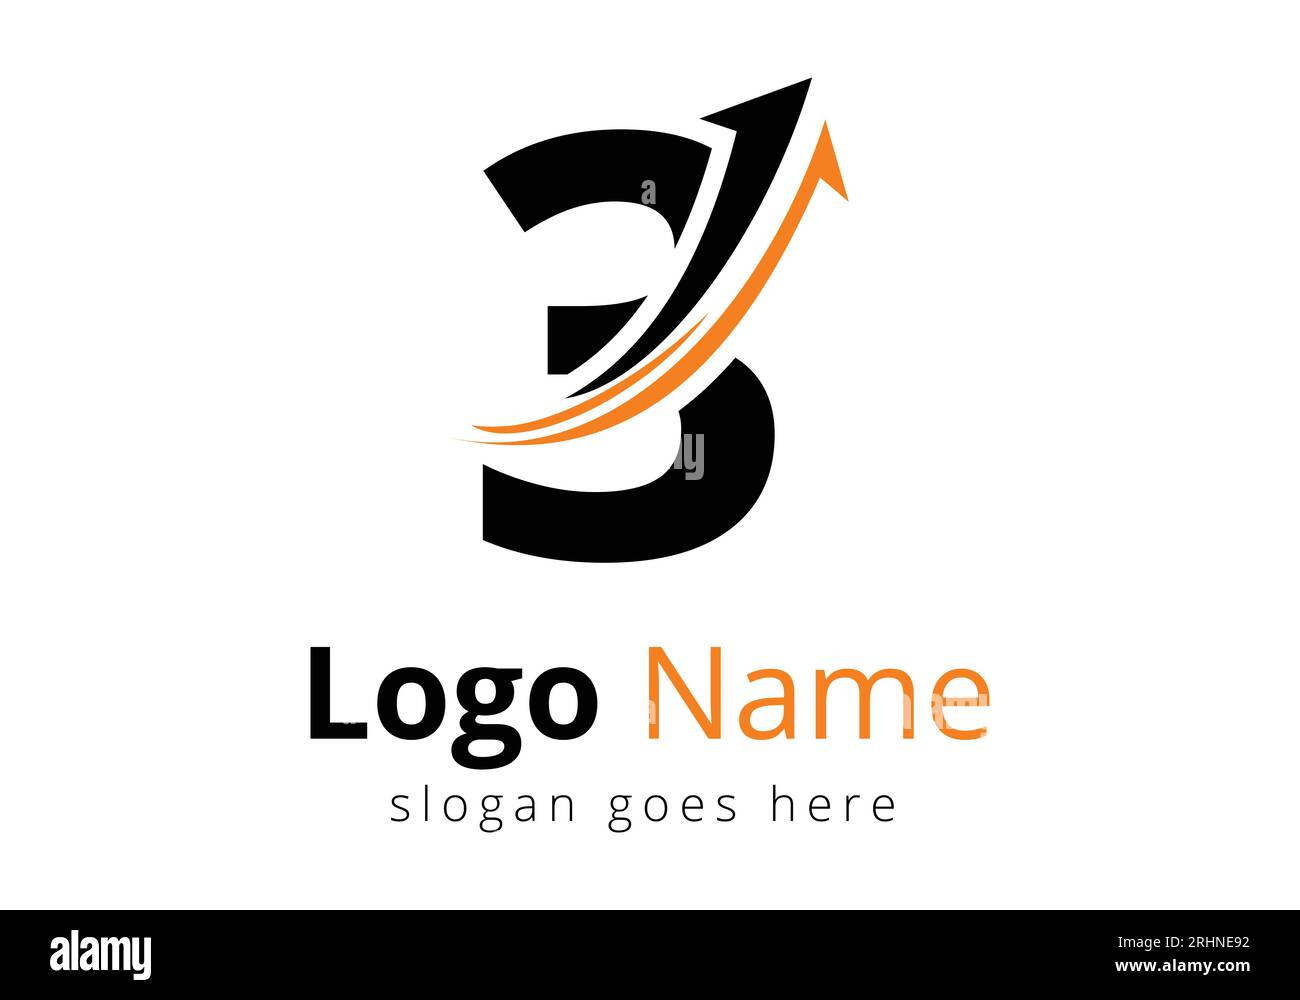 Finance-Logo Mit 3 Buchstaben-Konzept. Konzept für Finanz- oder Erfolgslogo. Logo für die Geschäfts- und Unternehmensidentität der Buchhaltung Stock Vektor